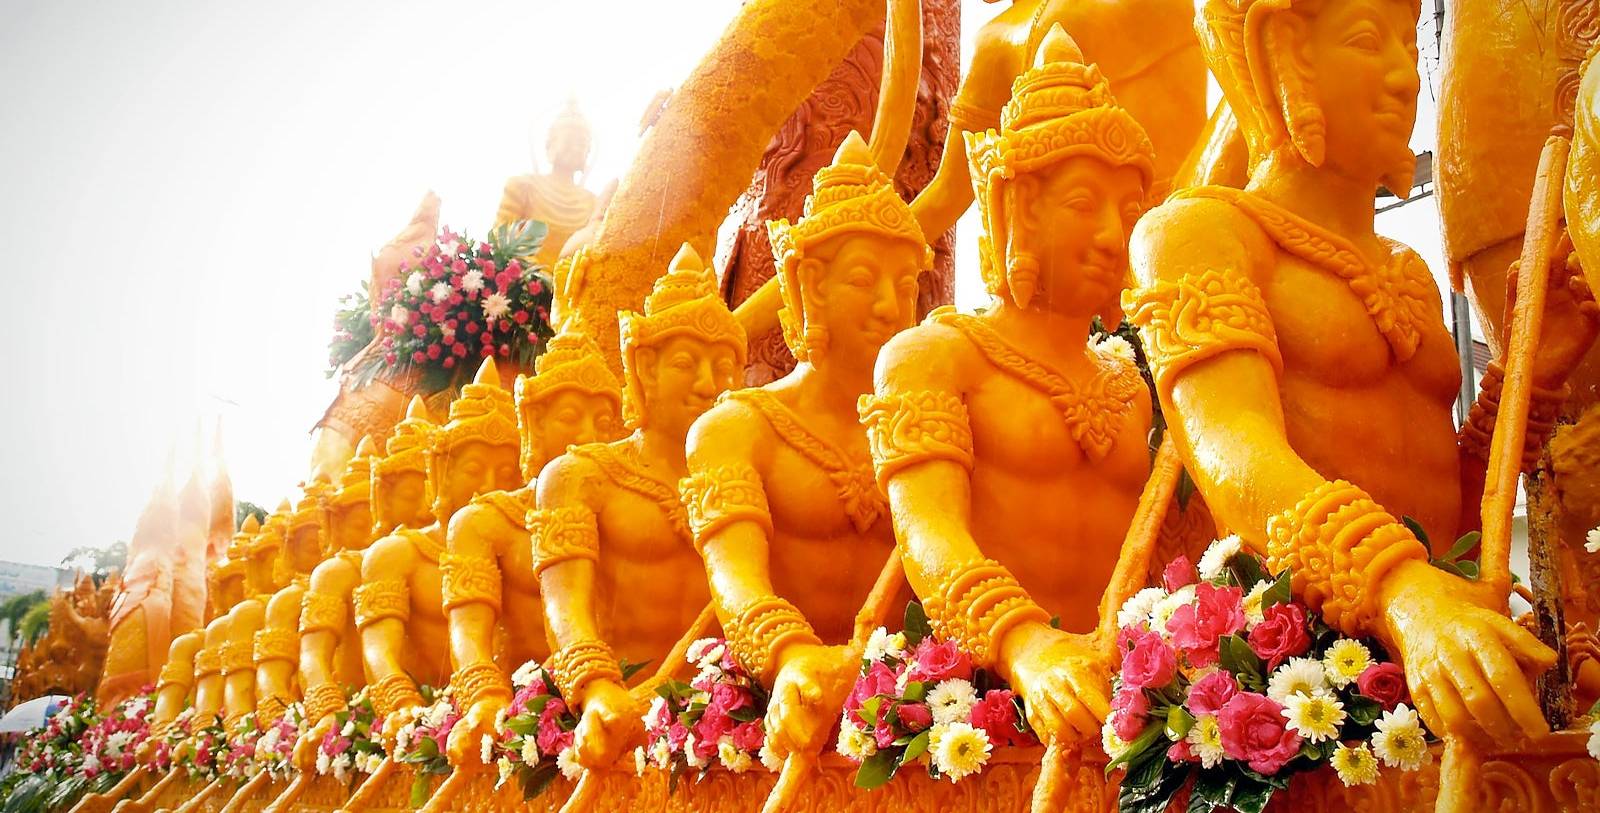 Thailand Festivals in December